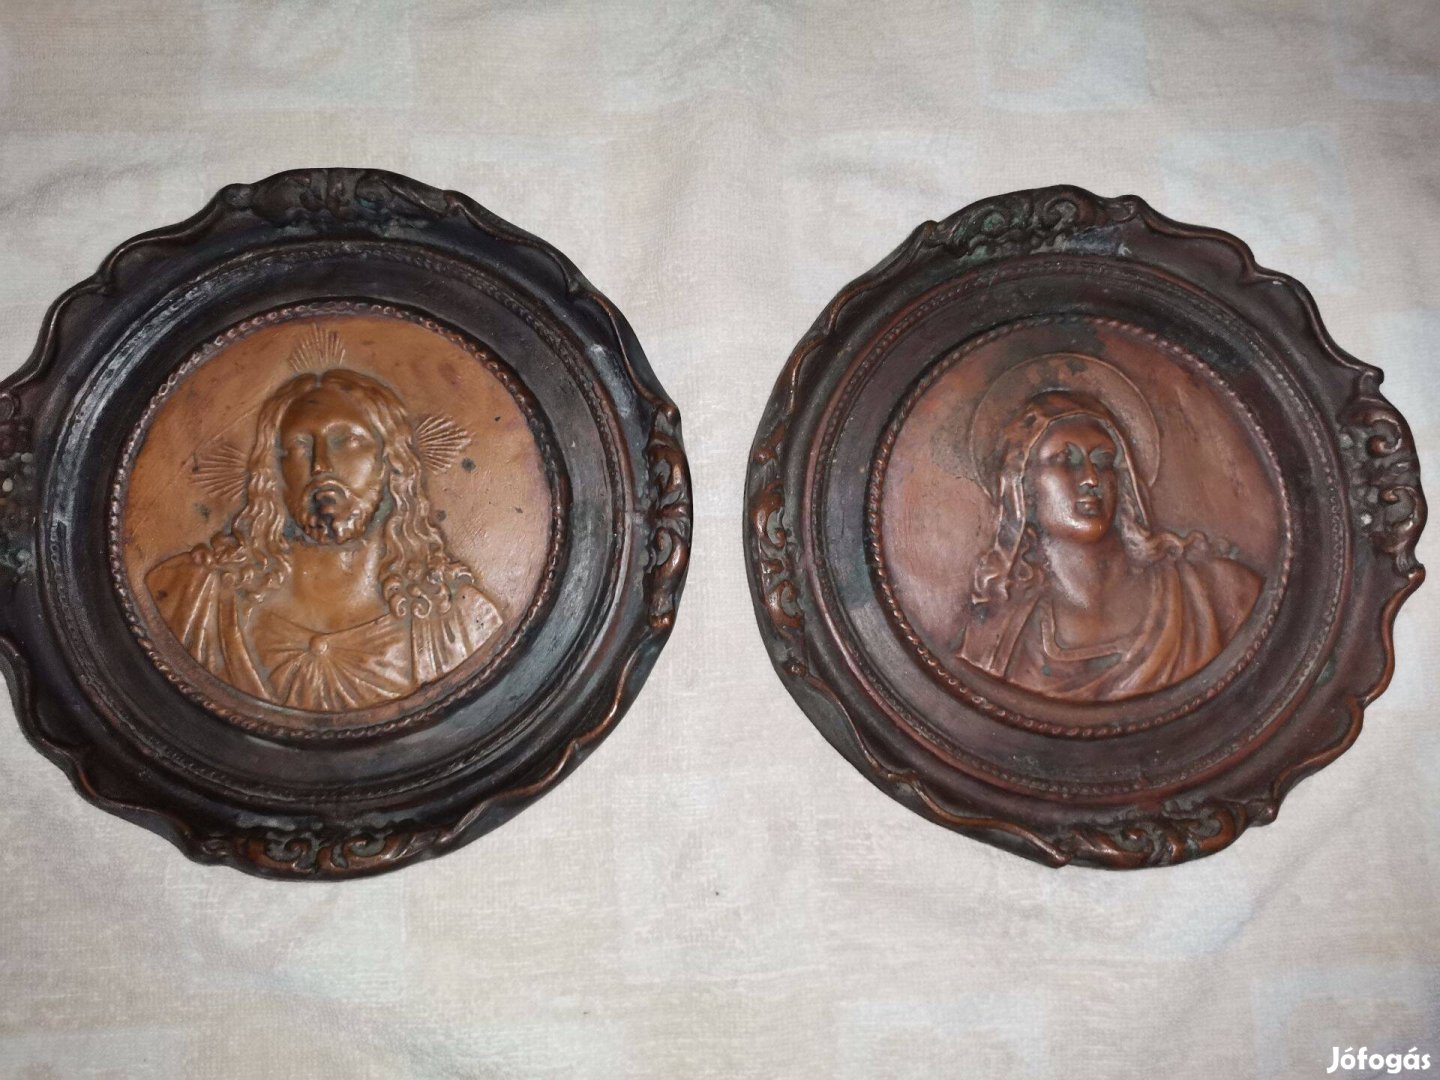 Jézus és Mária portré, bronzírozott festett, fali dísz vallási kegytár